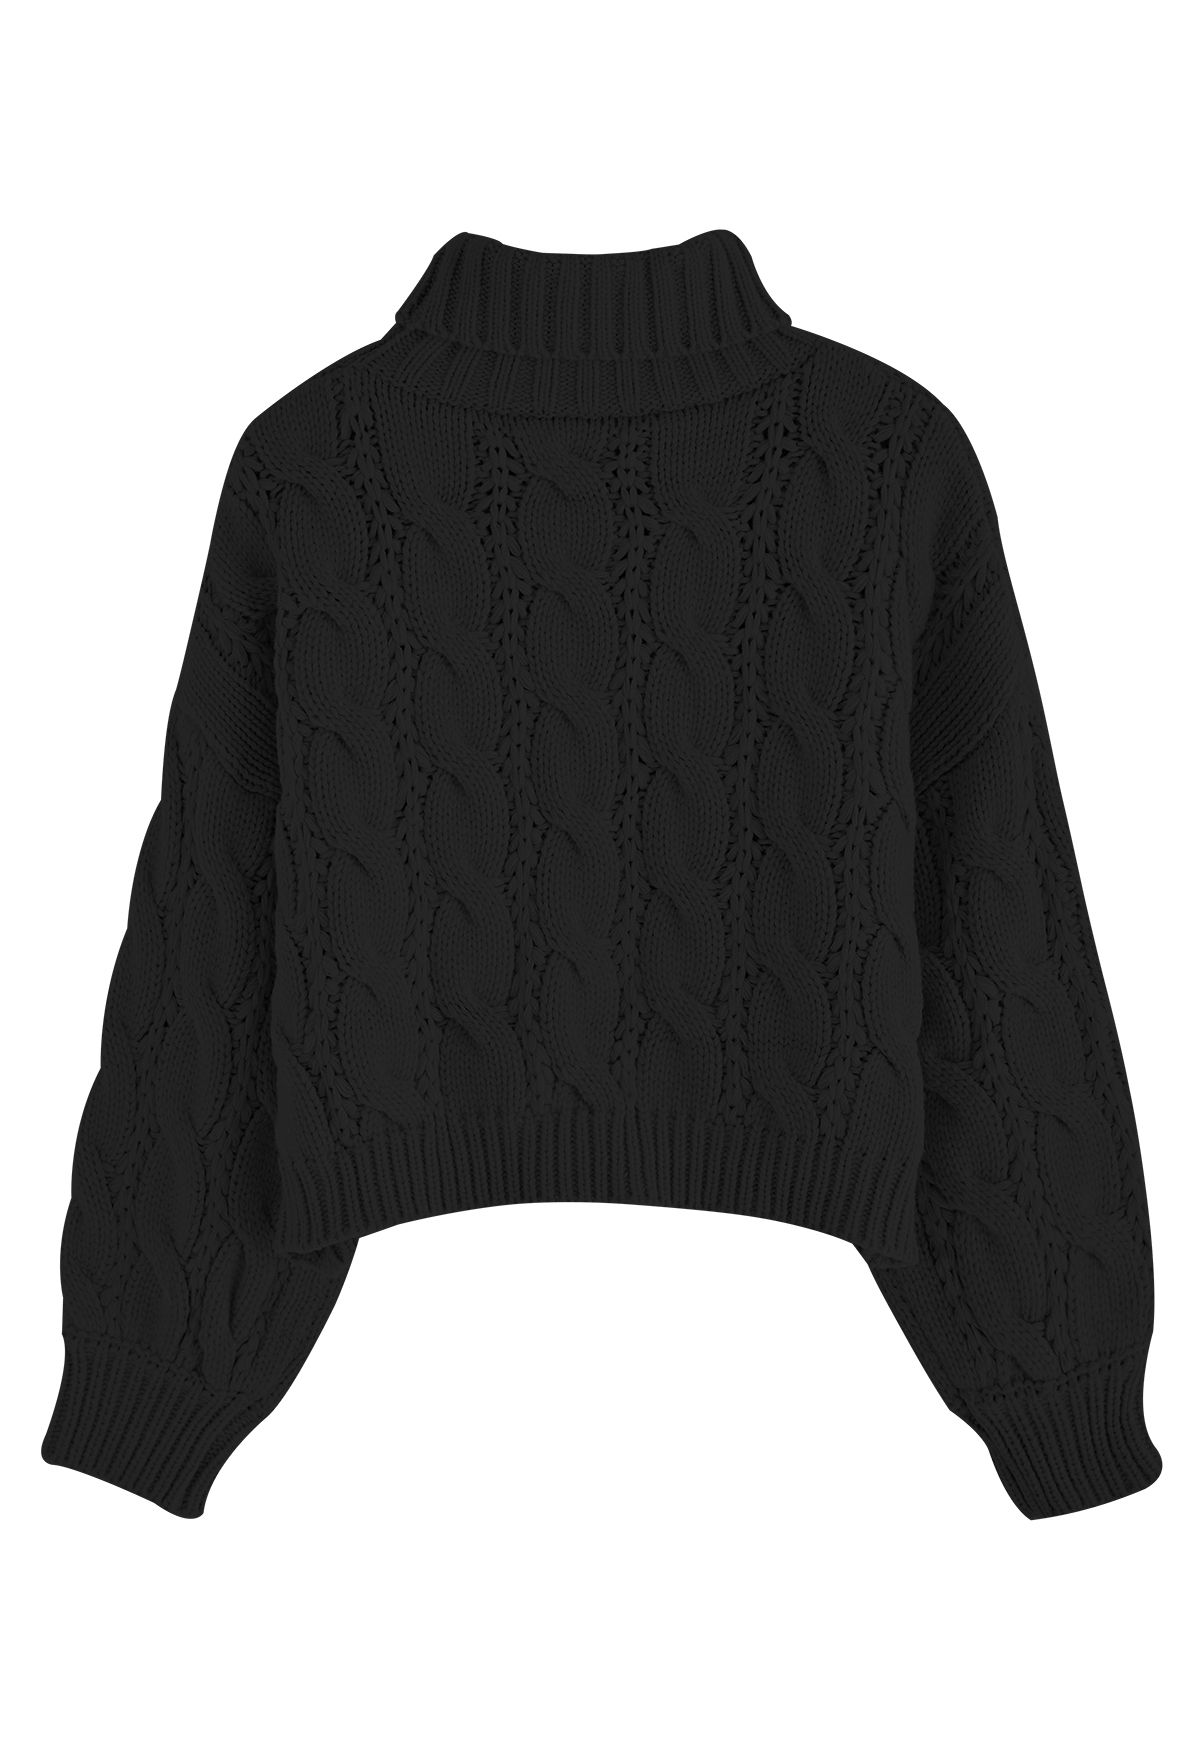 Maglione corto in maglia intrecciata a collo alto di colore nero